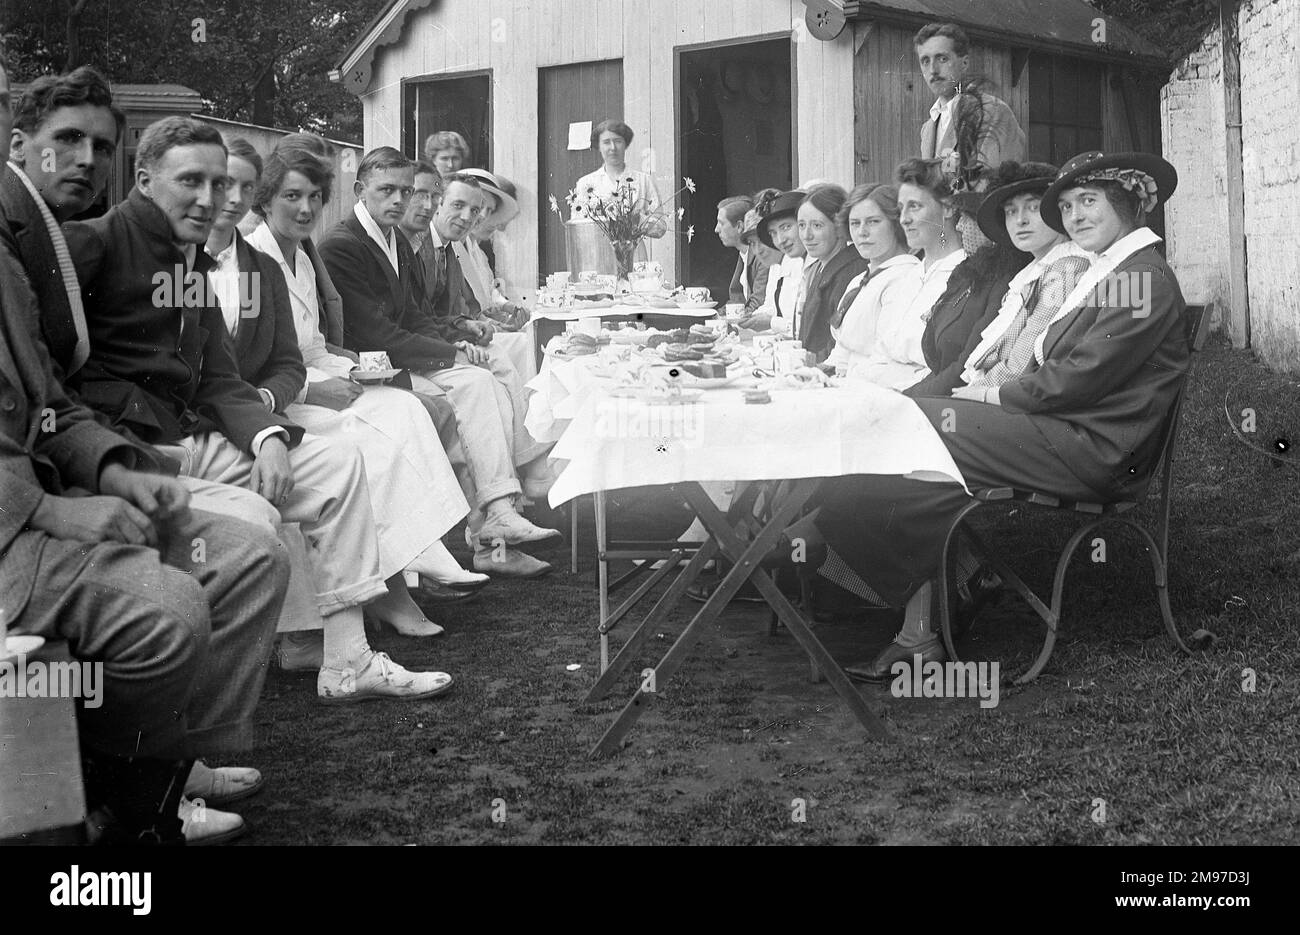 Groupe de thé au tournoi de tennis au club de tennis de Moorfield, Stockport. Une photographie de groupe formelle avec un grand style, et aussi une grande poignancy étant donné ce que la tragédie attendait tant d'entre eux que la première Guerre mondiale a éclaté juste un an plus tard. Banque D'Images